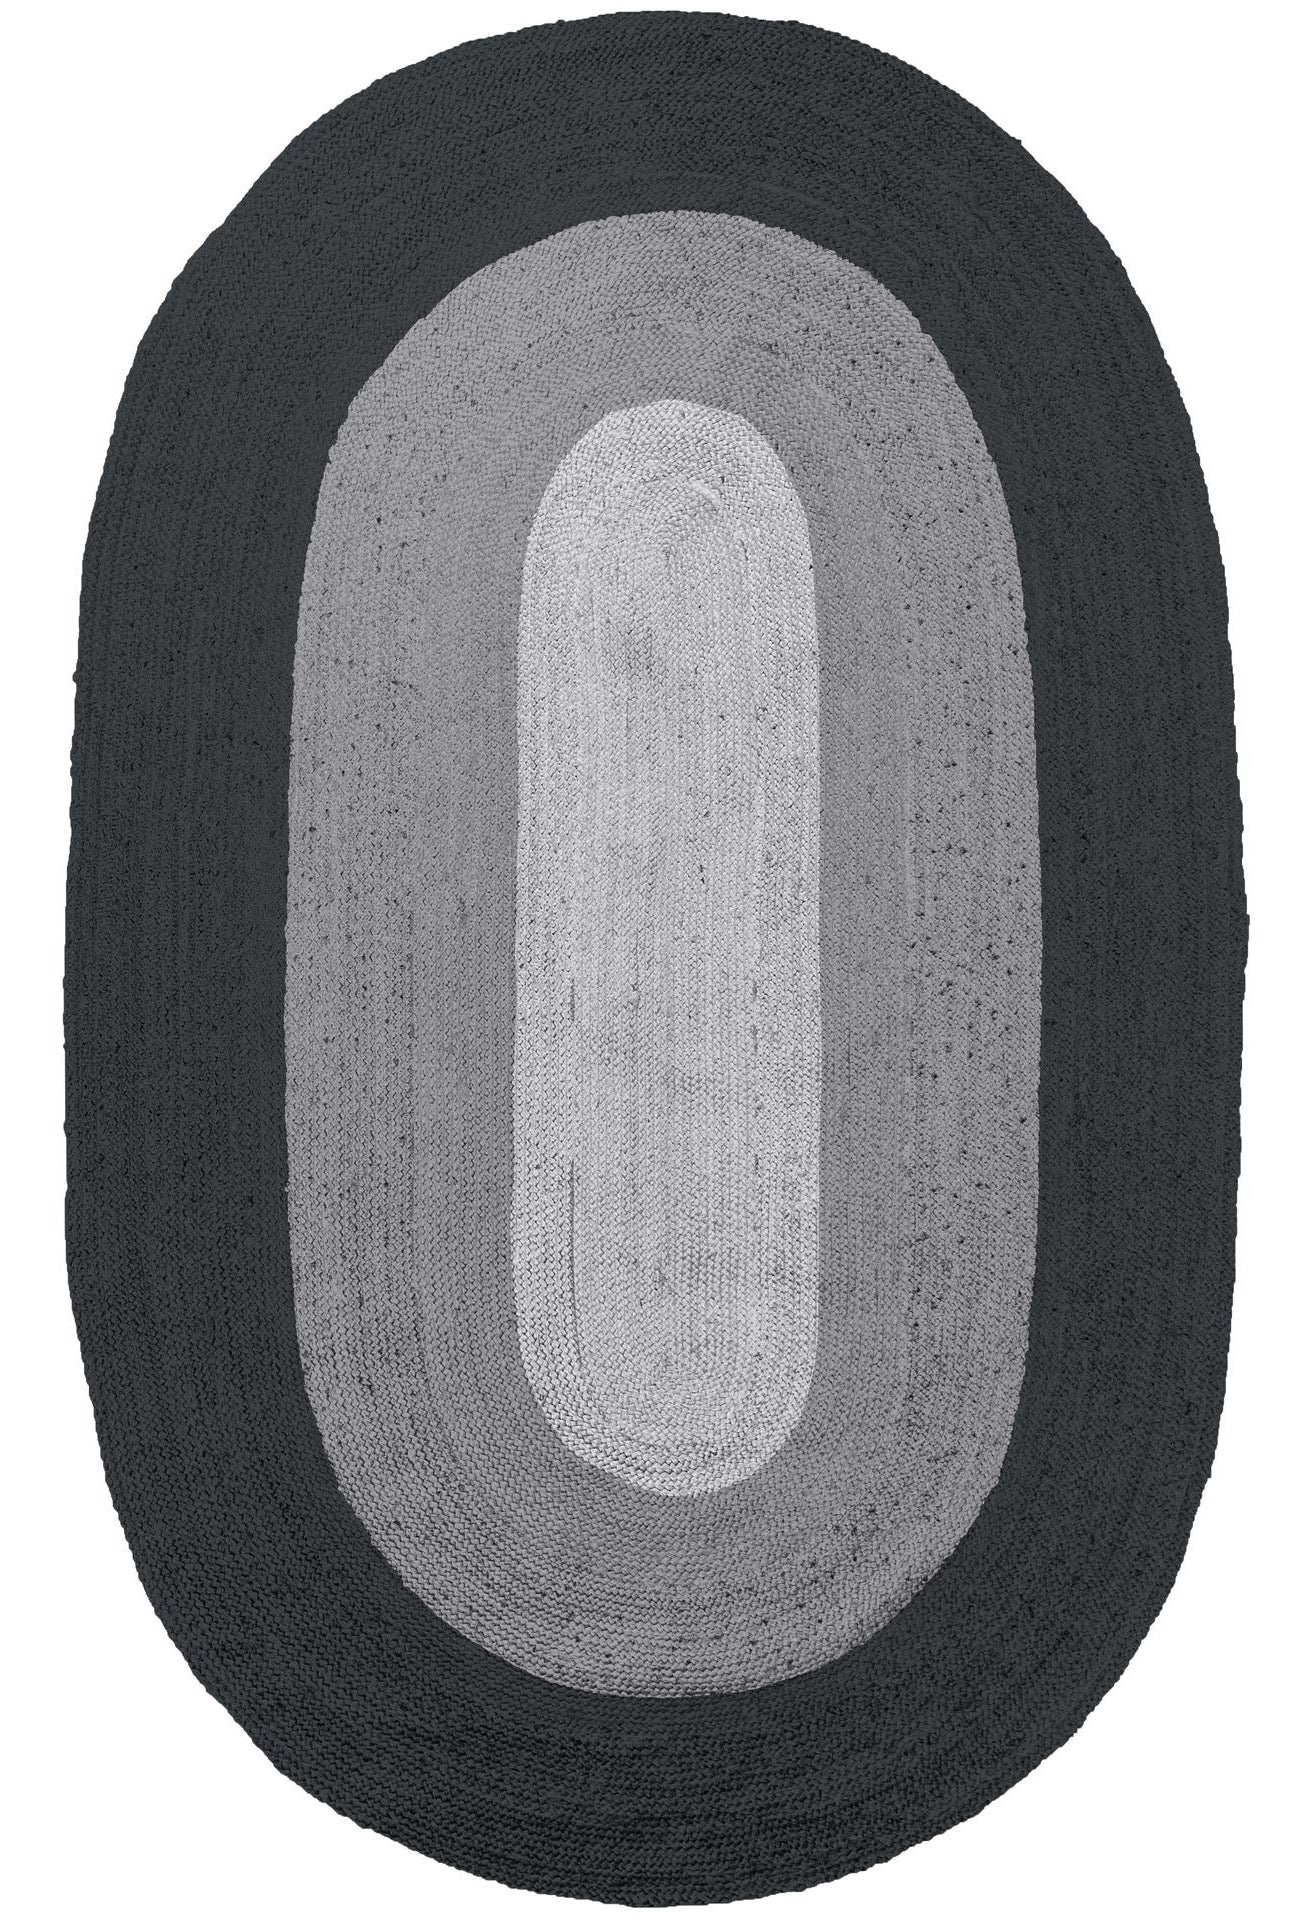 Teppich BORDER 170x300 cm oval aus Jute schwarz/grau – ALLES GOLD WAS GLÄNZT